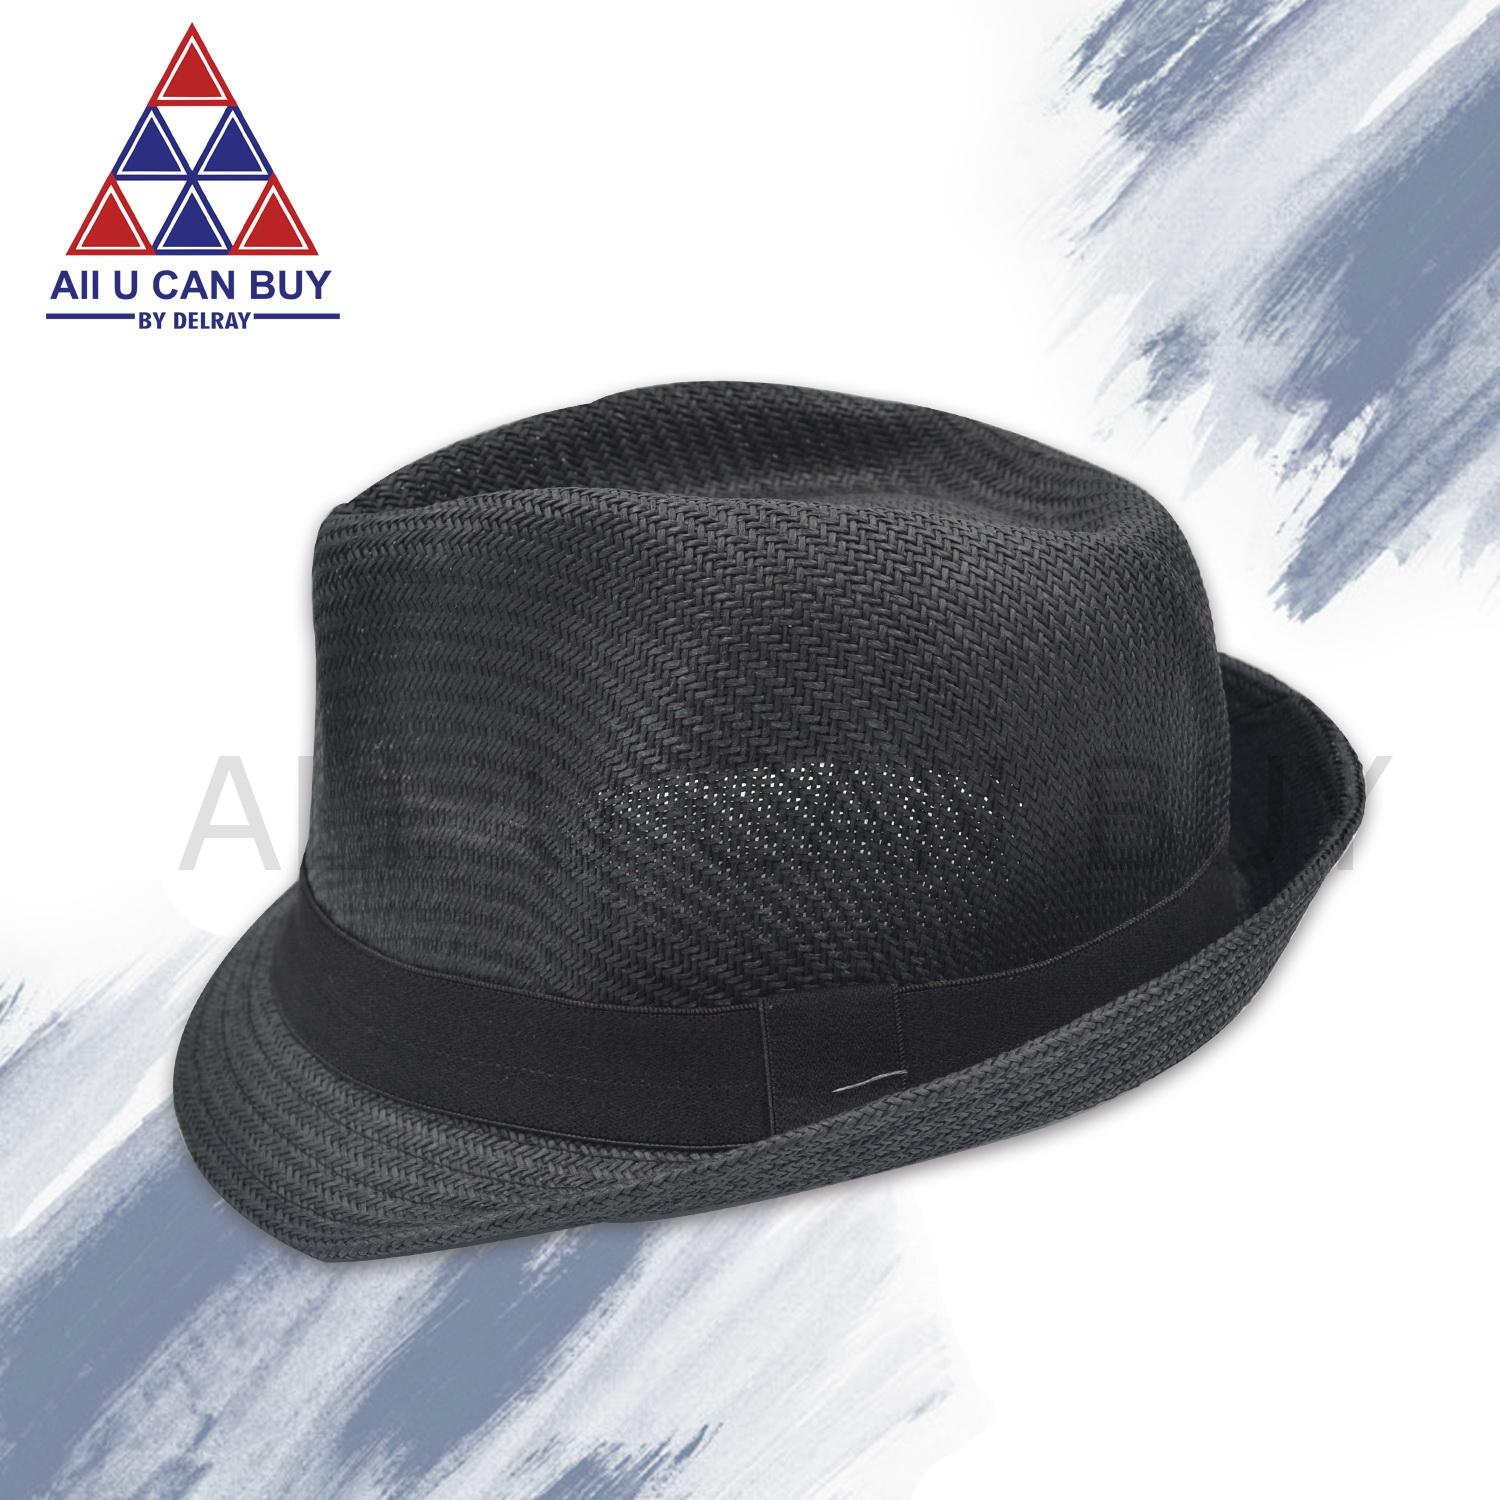 ALL U CAN BUY หมวก หมวกฮิปสเตอร์ หมวกคาวบอย หมวกทรงคาวบอย หมวกสาน หมวกสีดำ หมวกปีกรอบ หมวกแฟชั่น